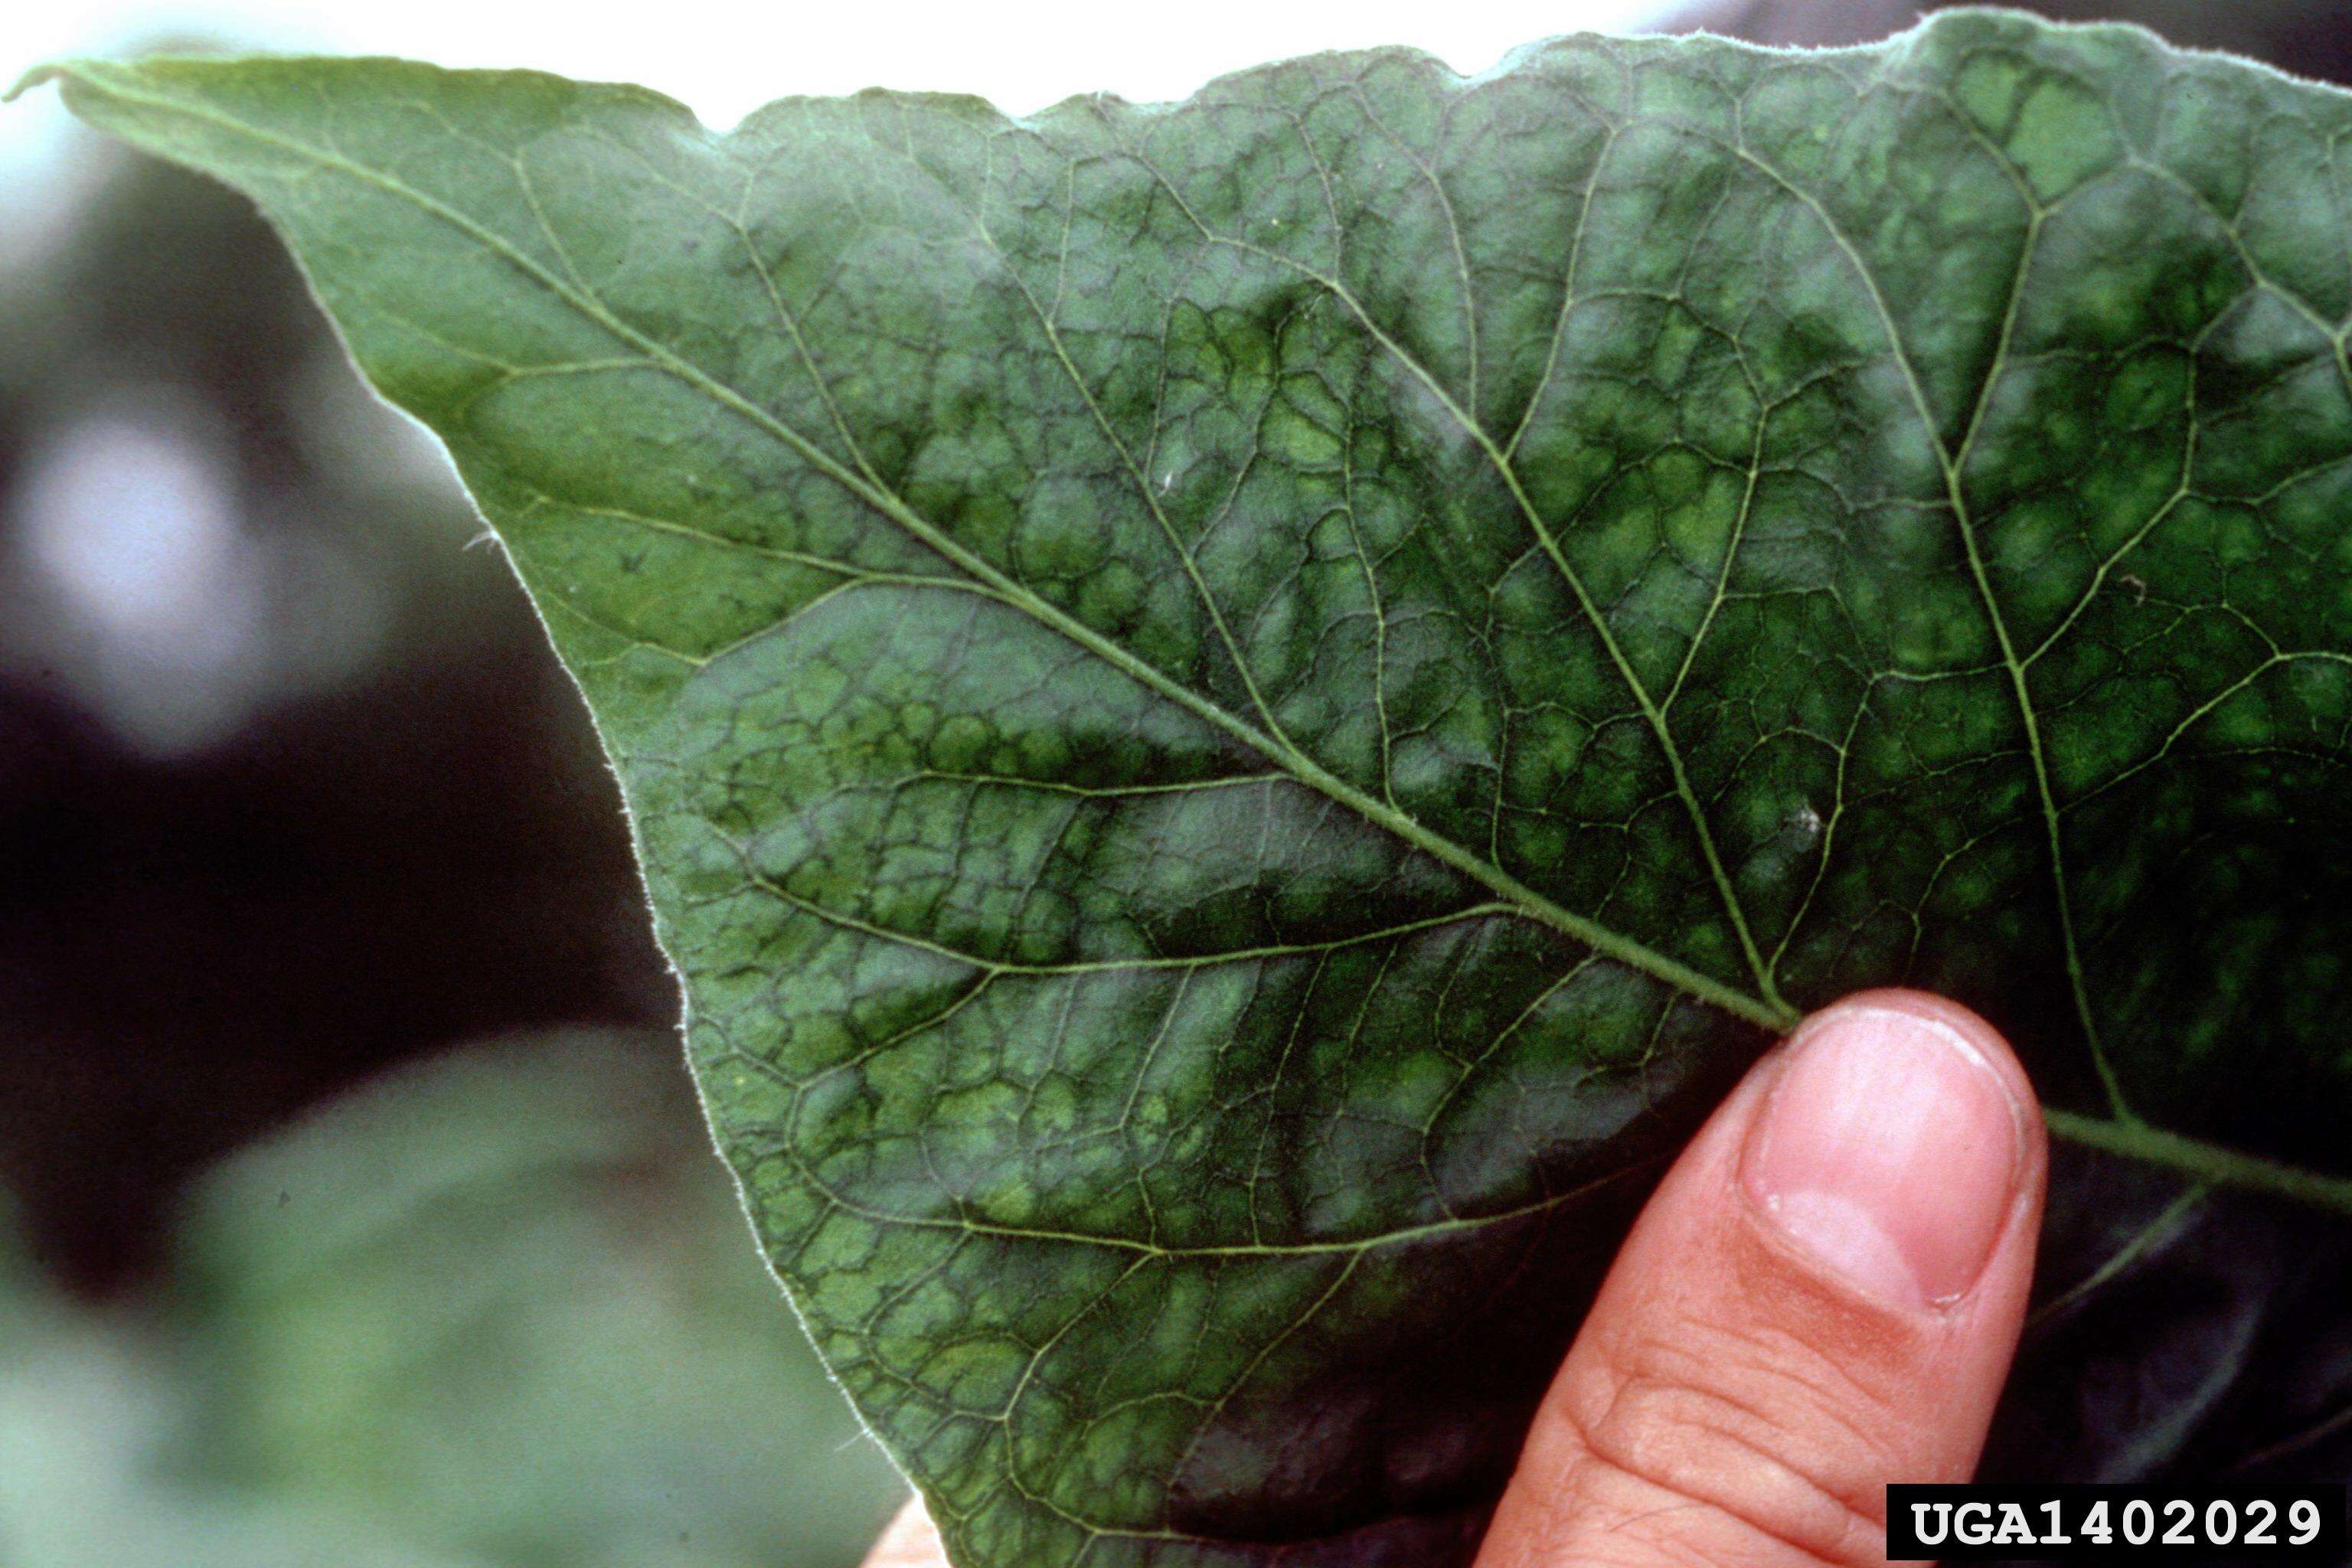 PVY symptoms on a tobacco leaf.